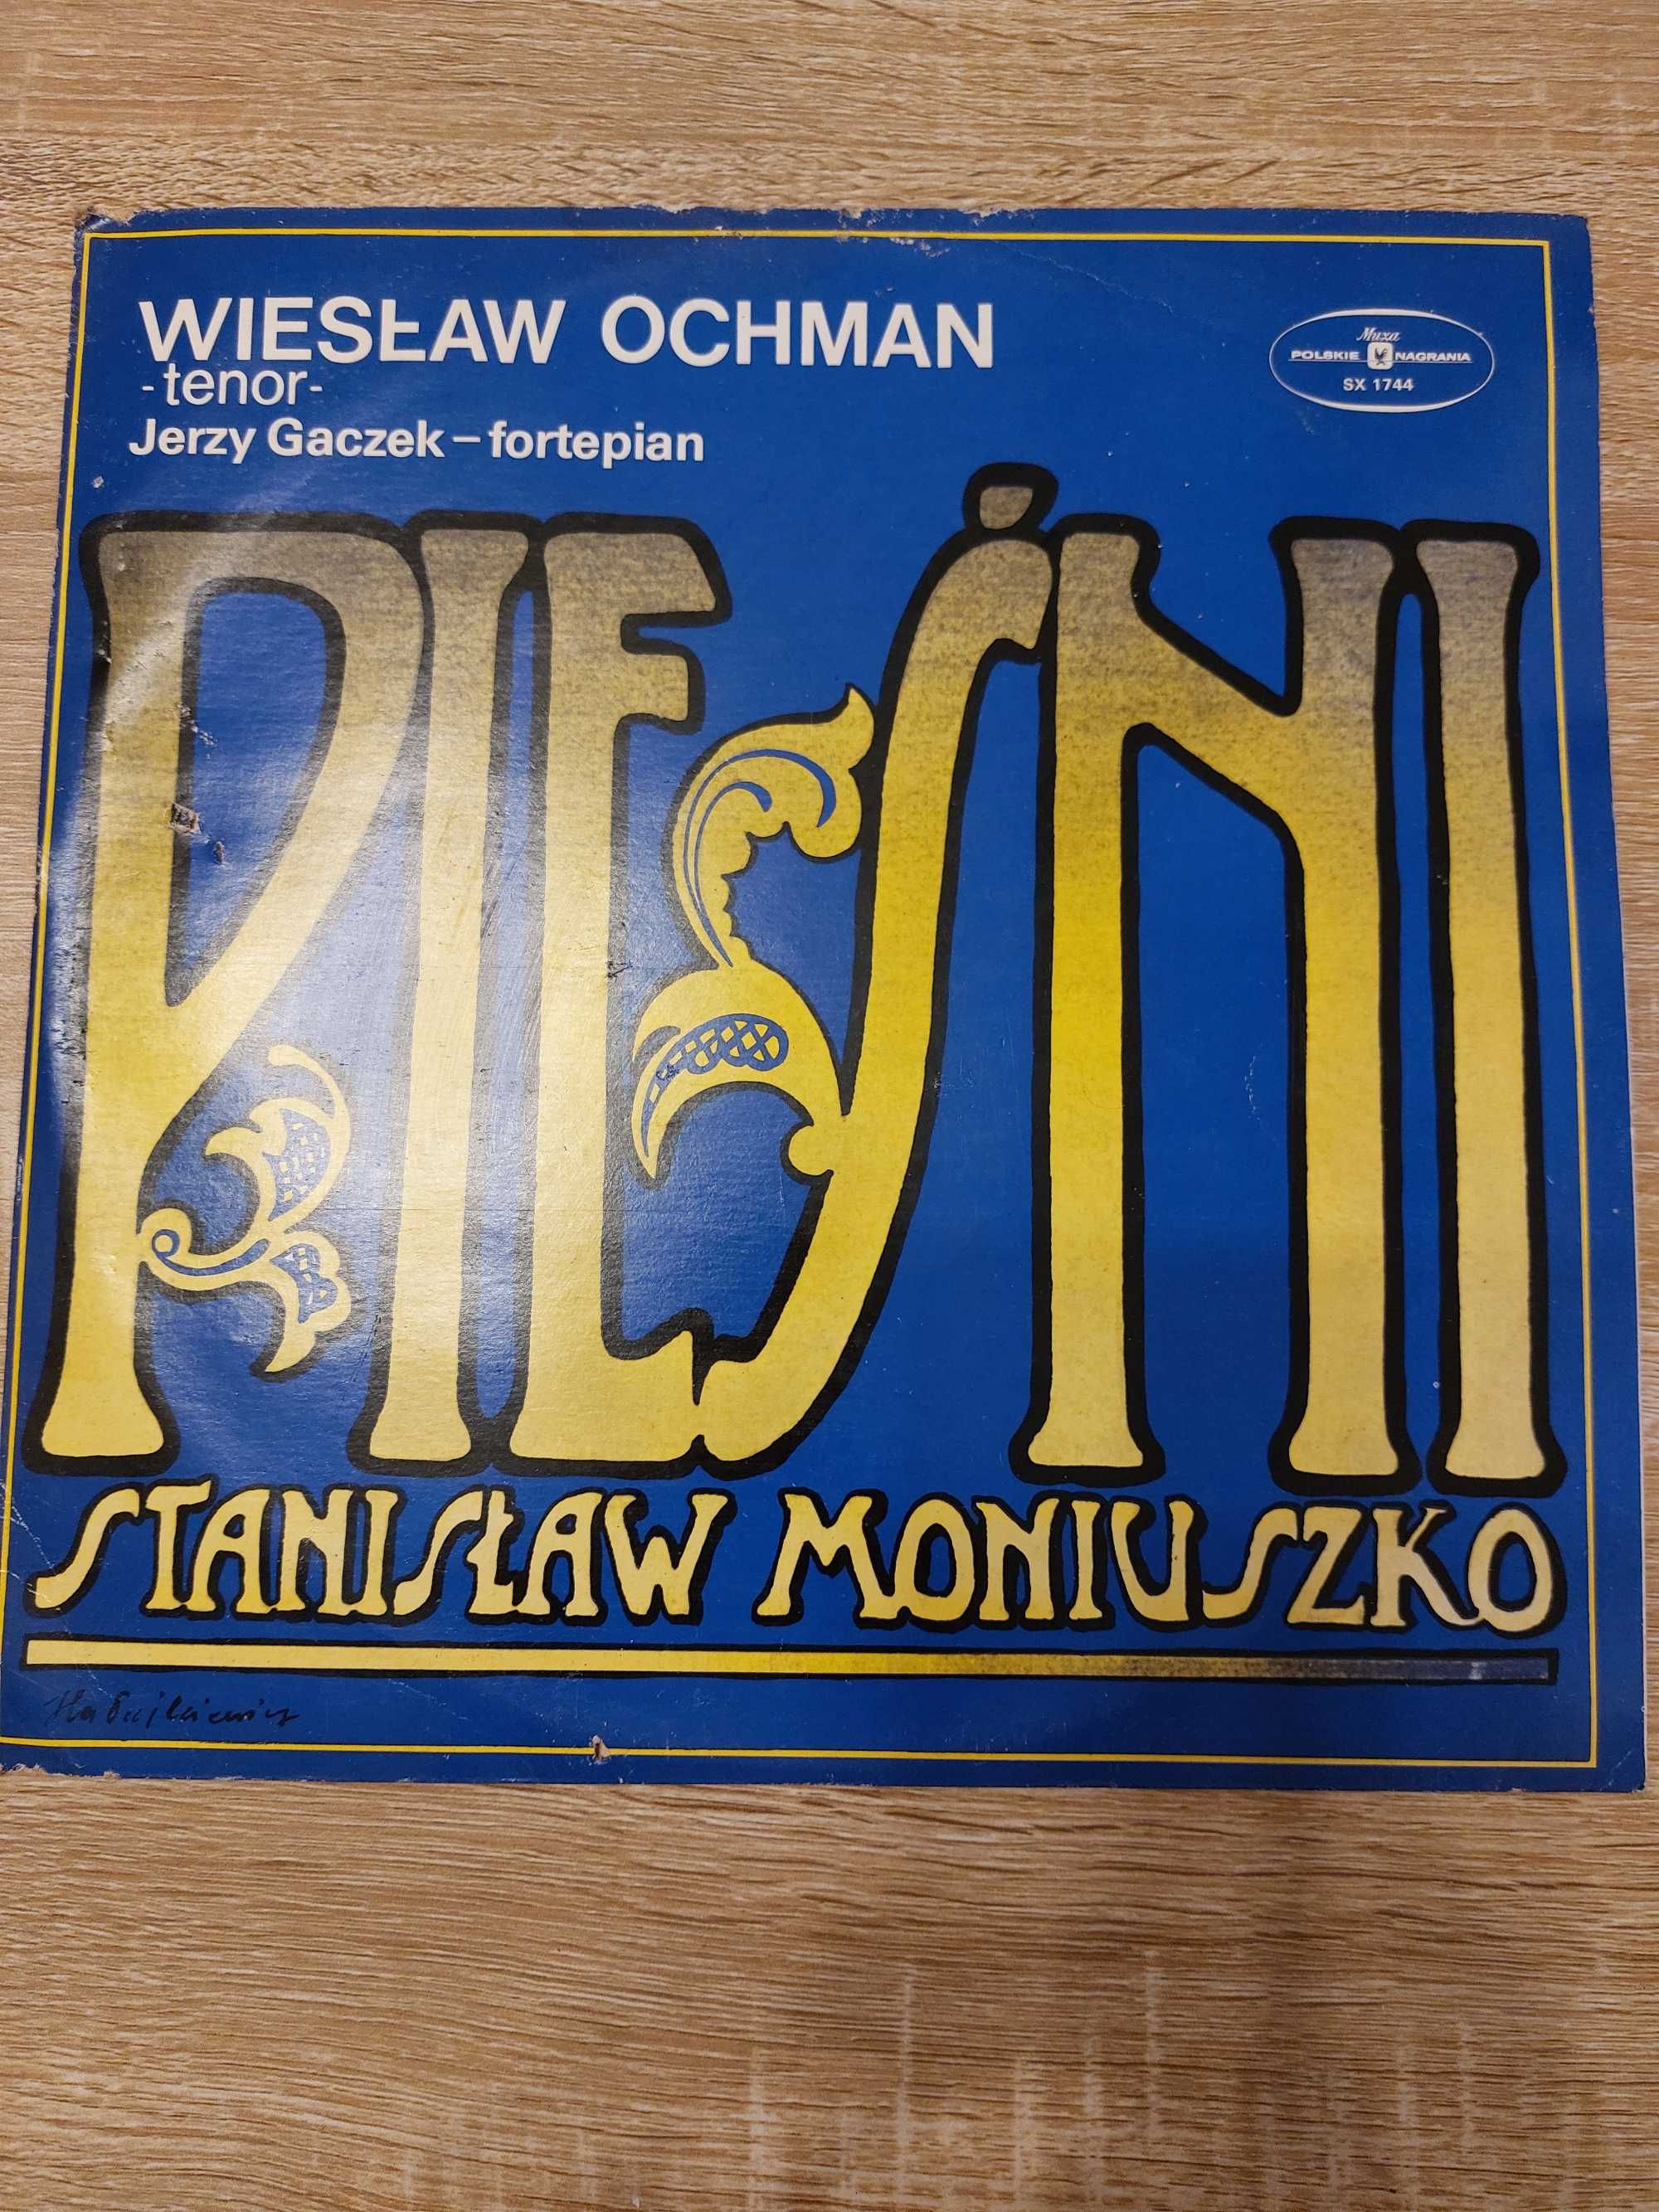 Wiesław Ochman, Moniuszko - płyta winylowa